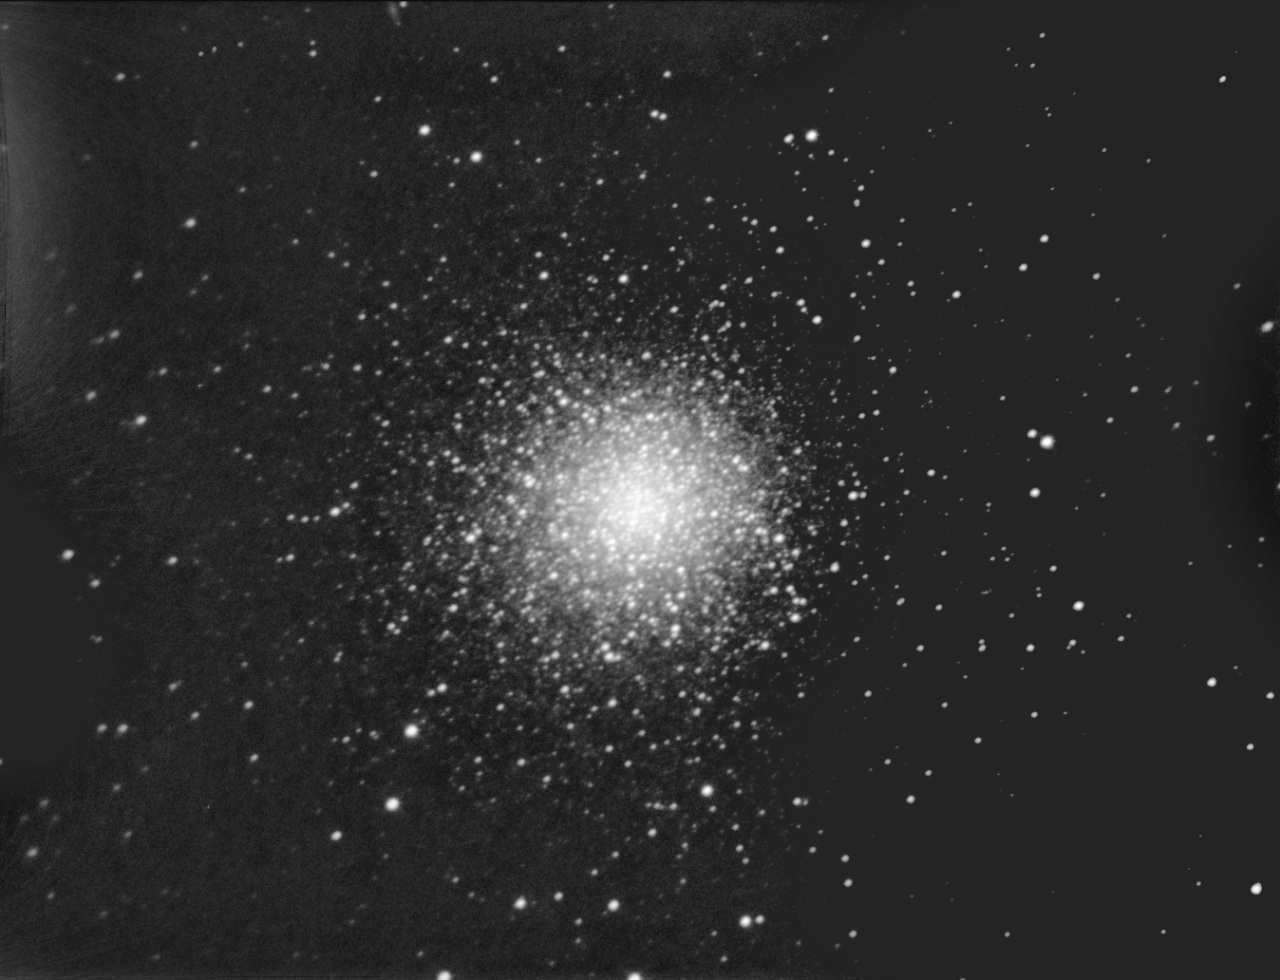 Image réalisée par "Chamois" (son pseudo sur le forum astro de Futura-Sciences) en 1 heure 10 de pose avec une caméra CCD et un télescope de 200mm de diamètre.